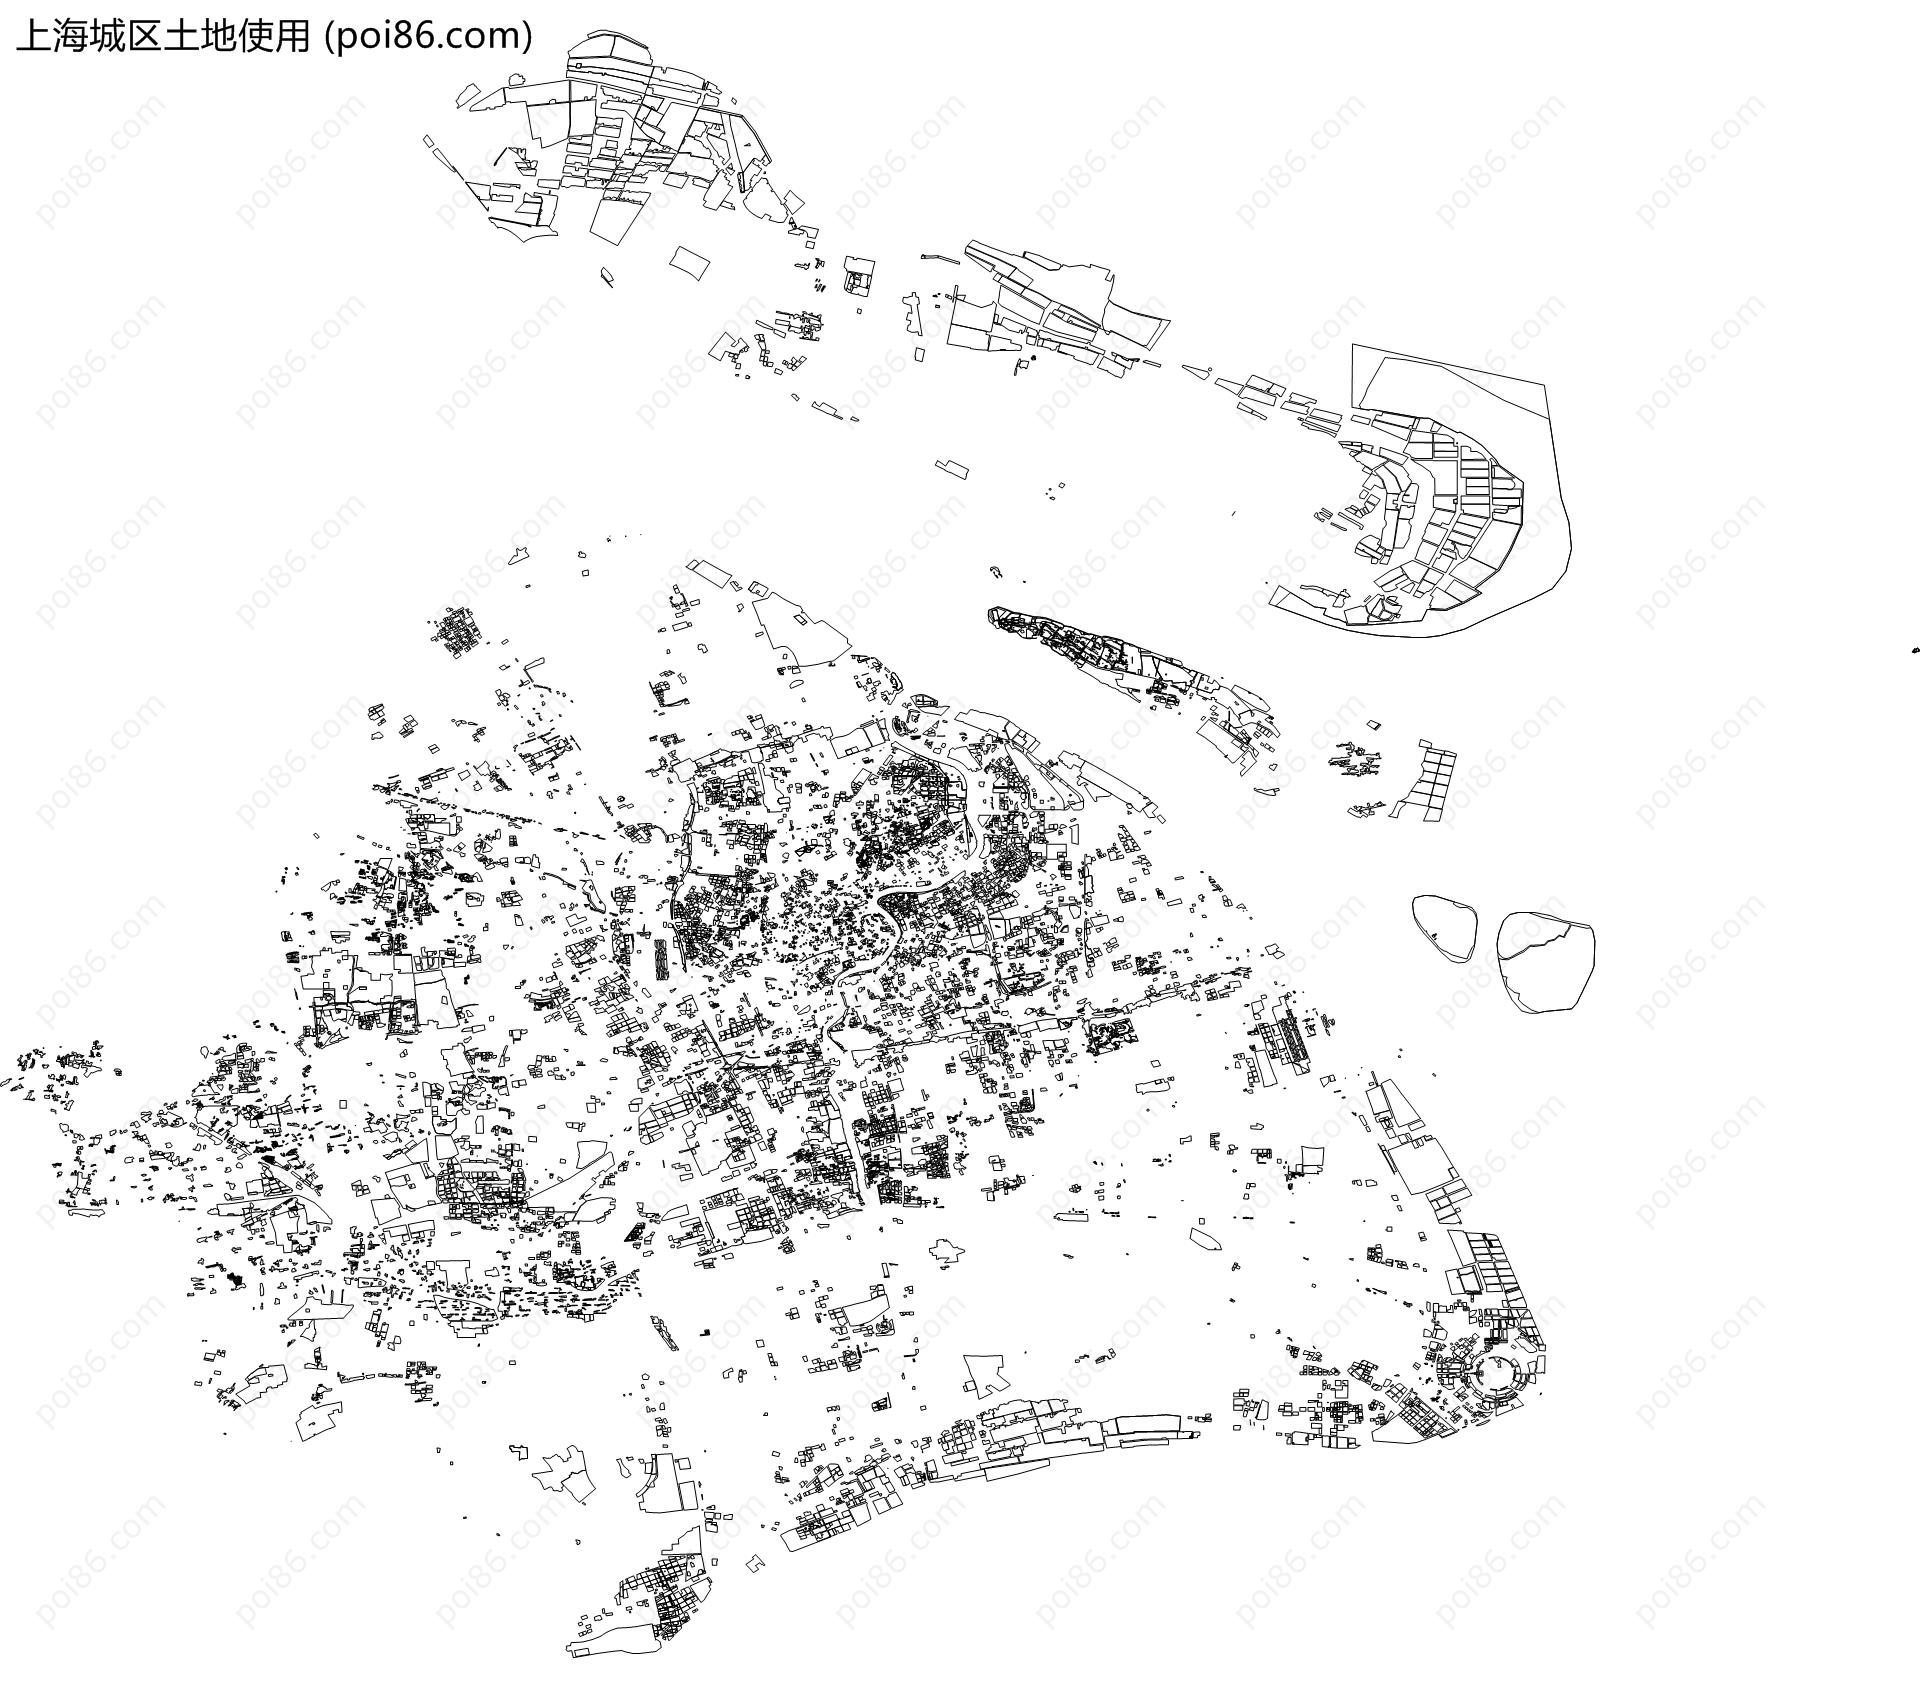 上海城区土地使用地图